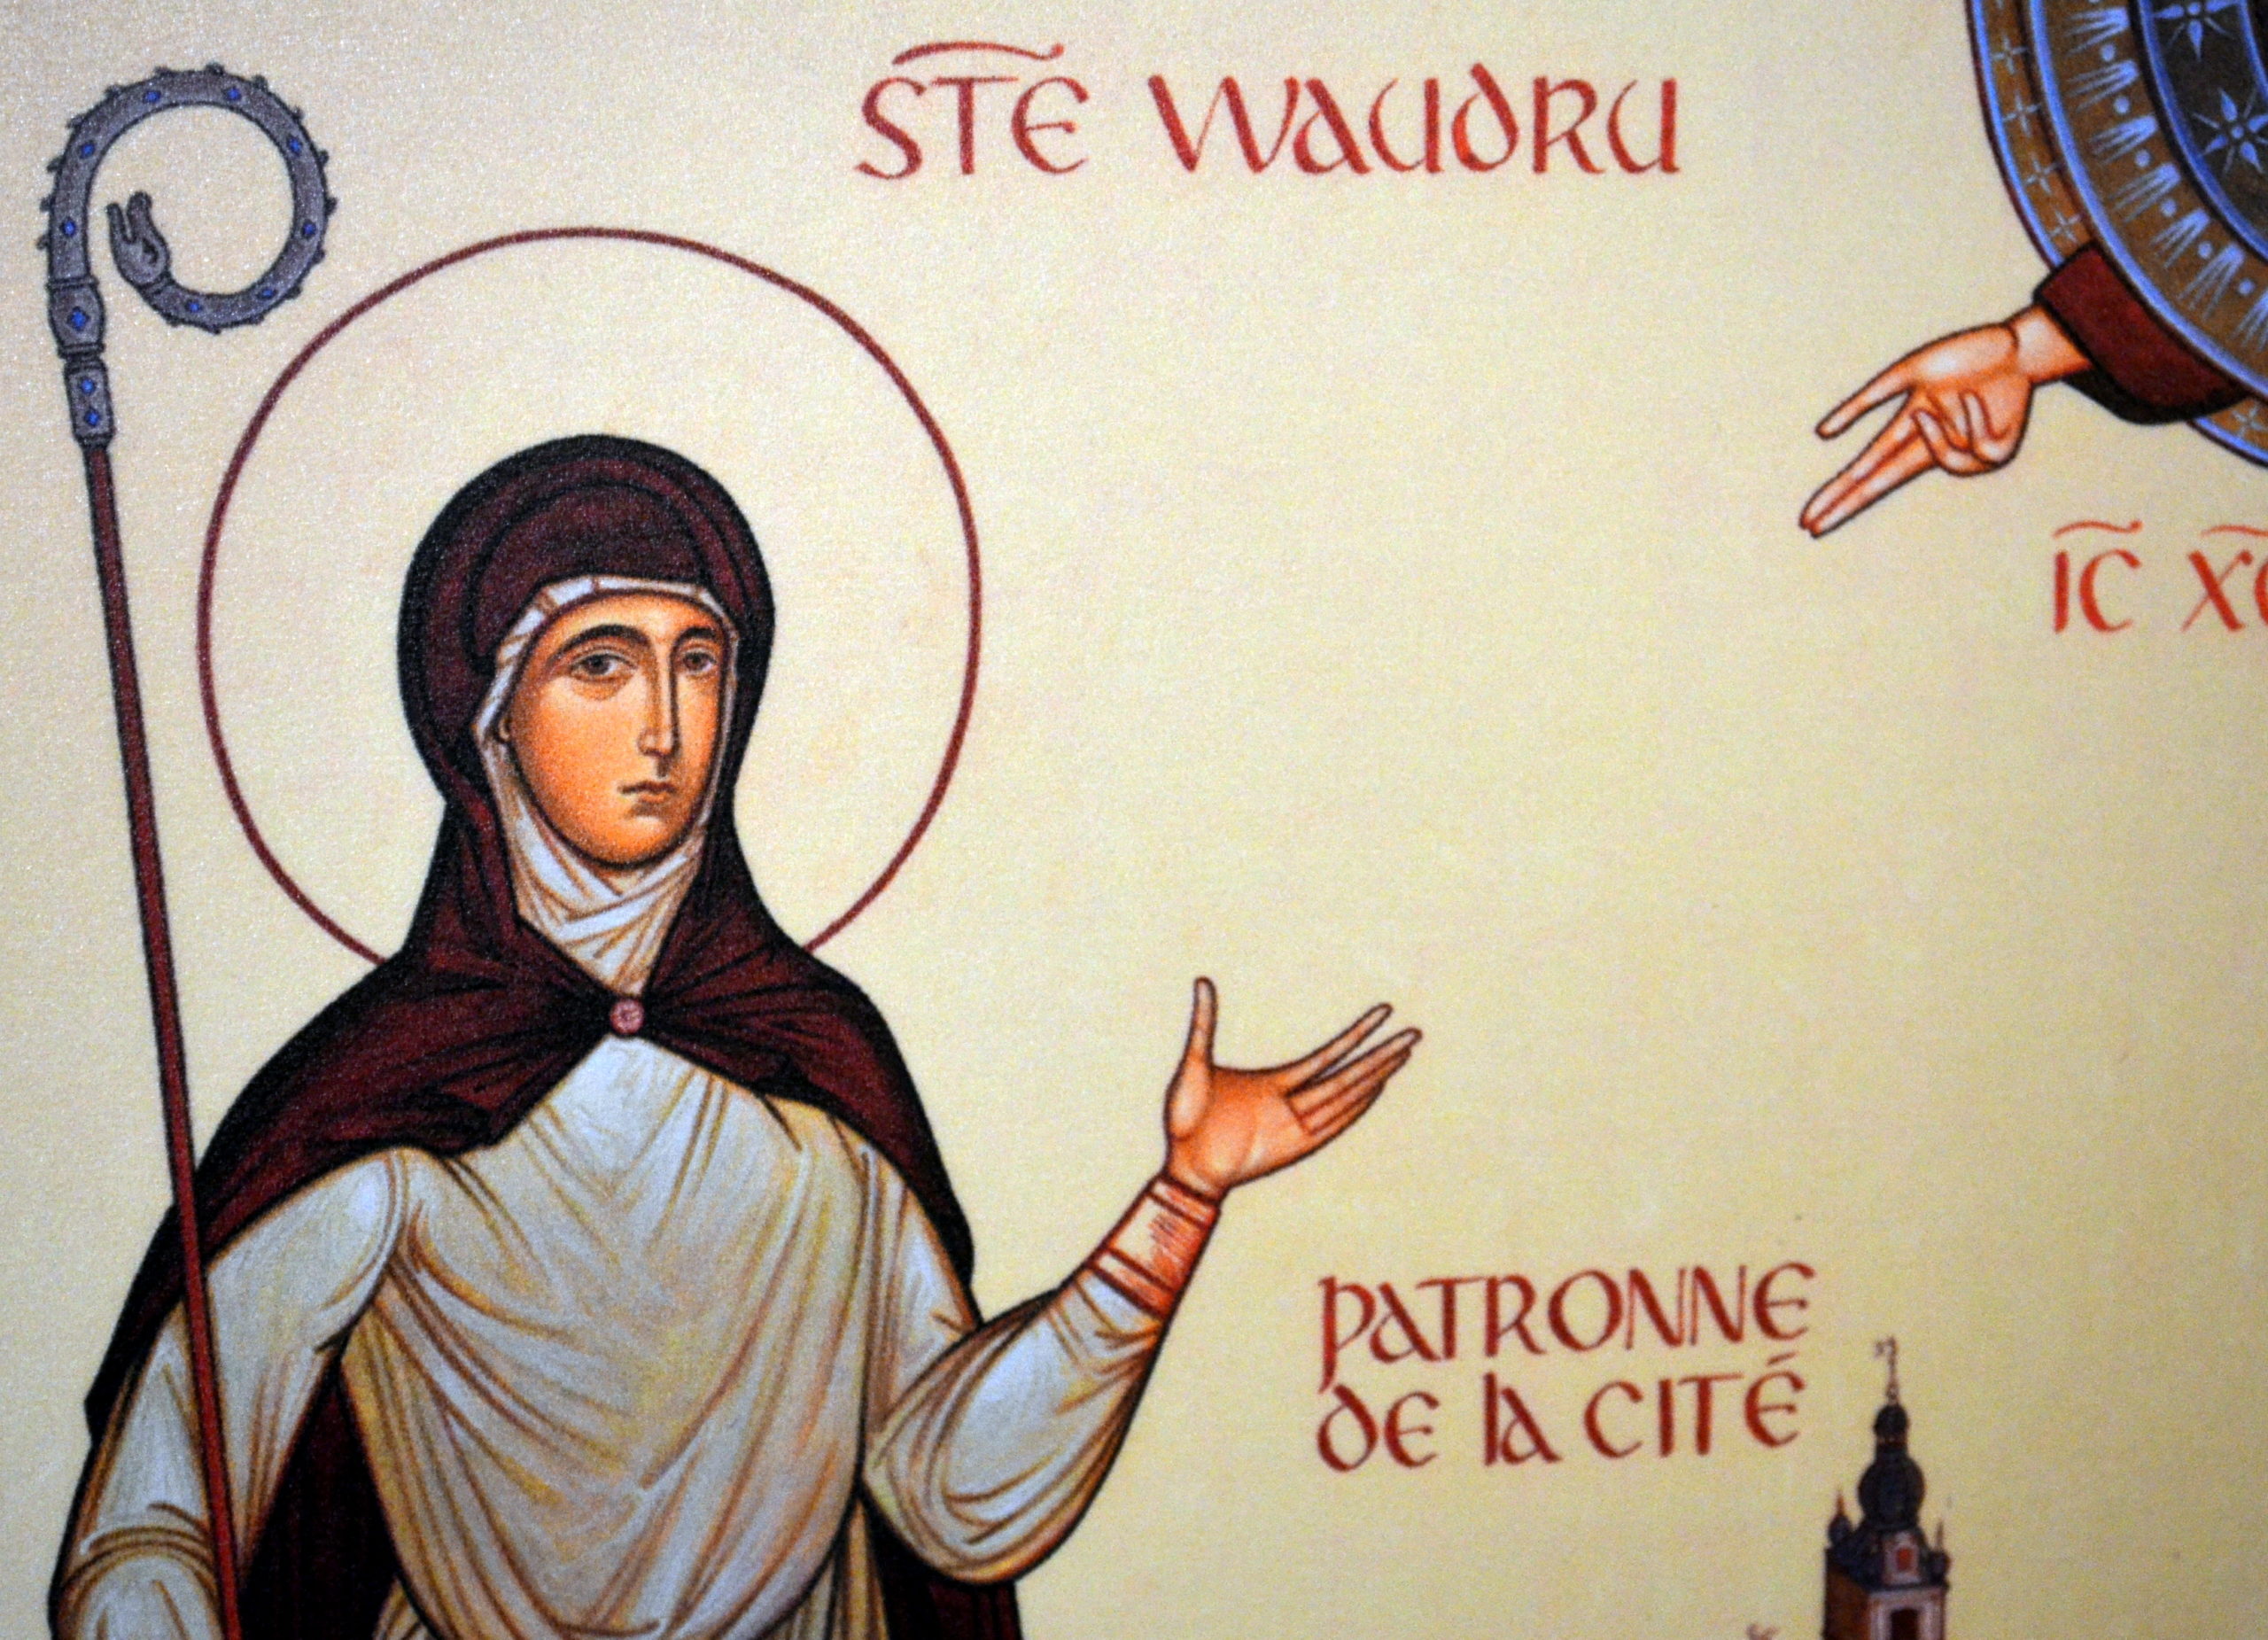 Porte-clés sainte Waudru – saint Christophe